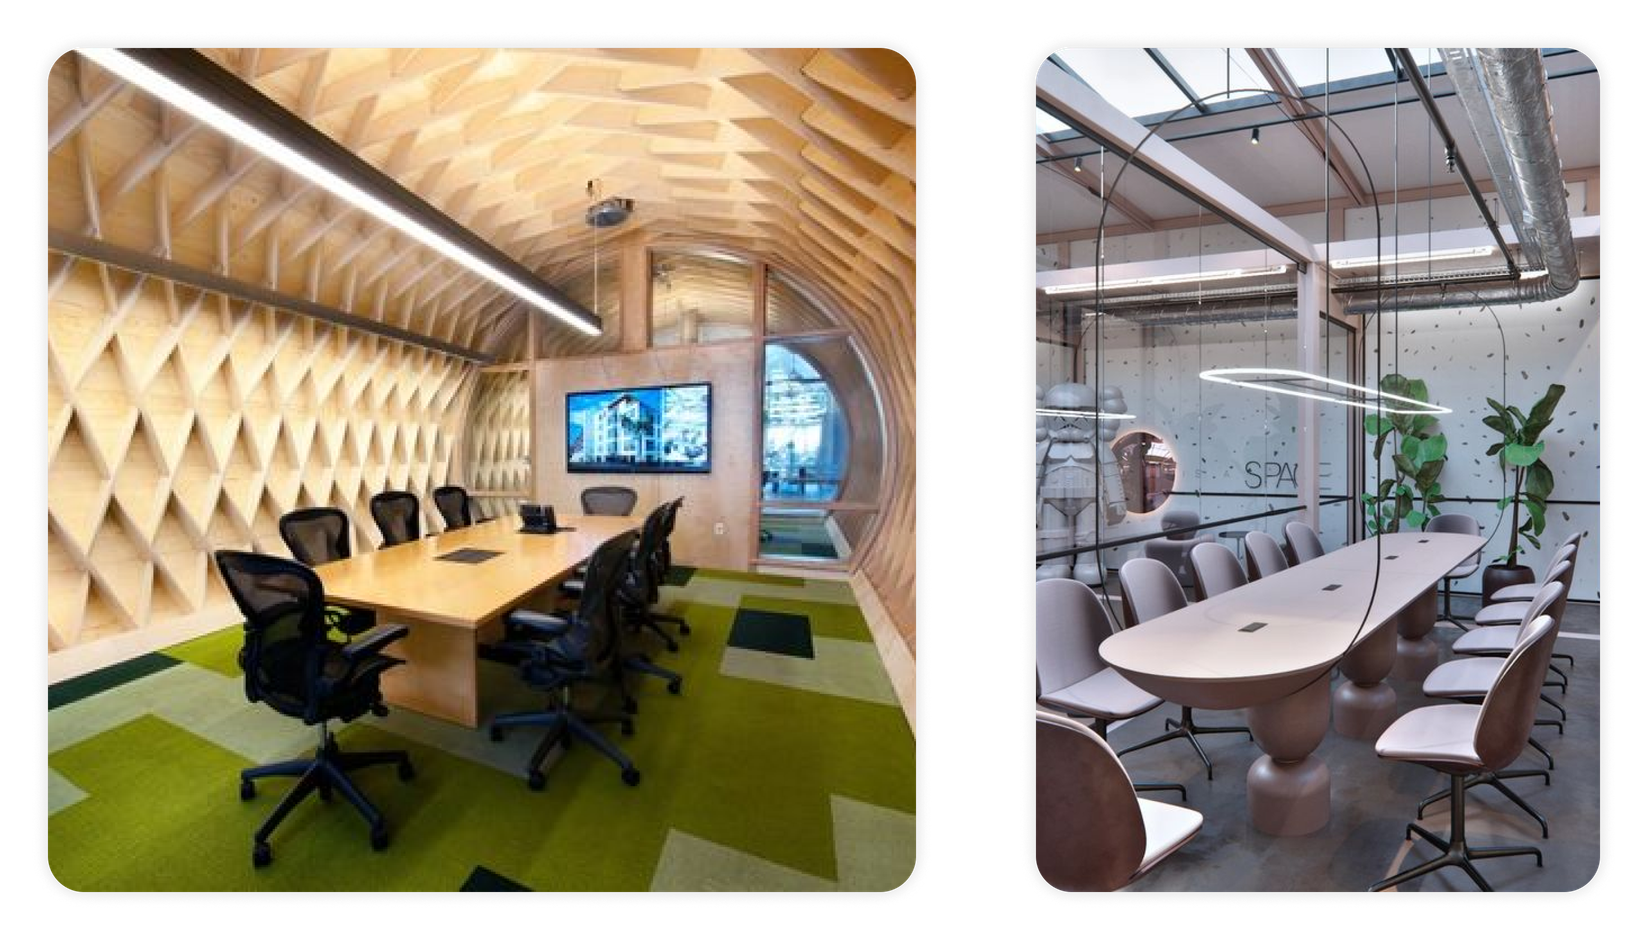 Futuristic meeting room design ideas